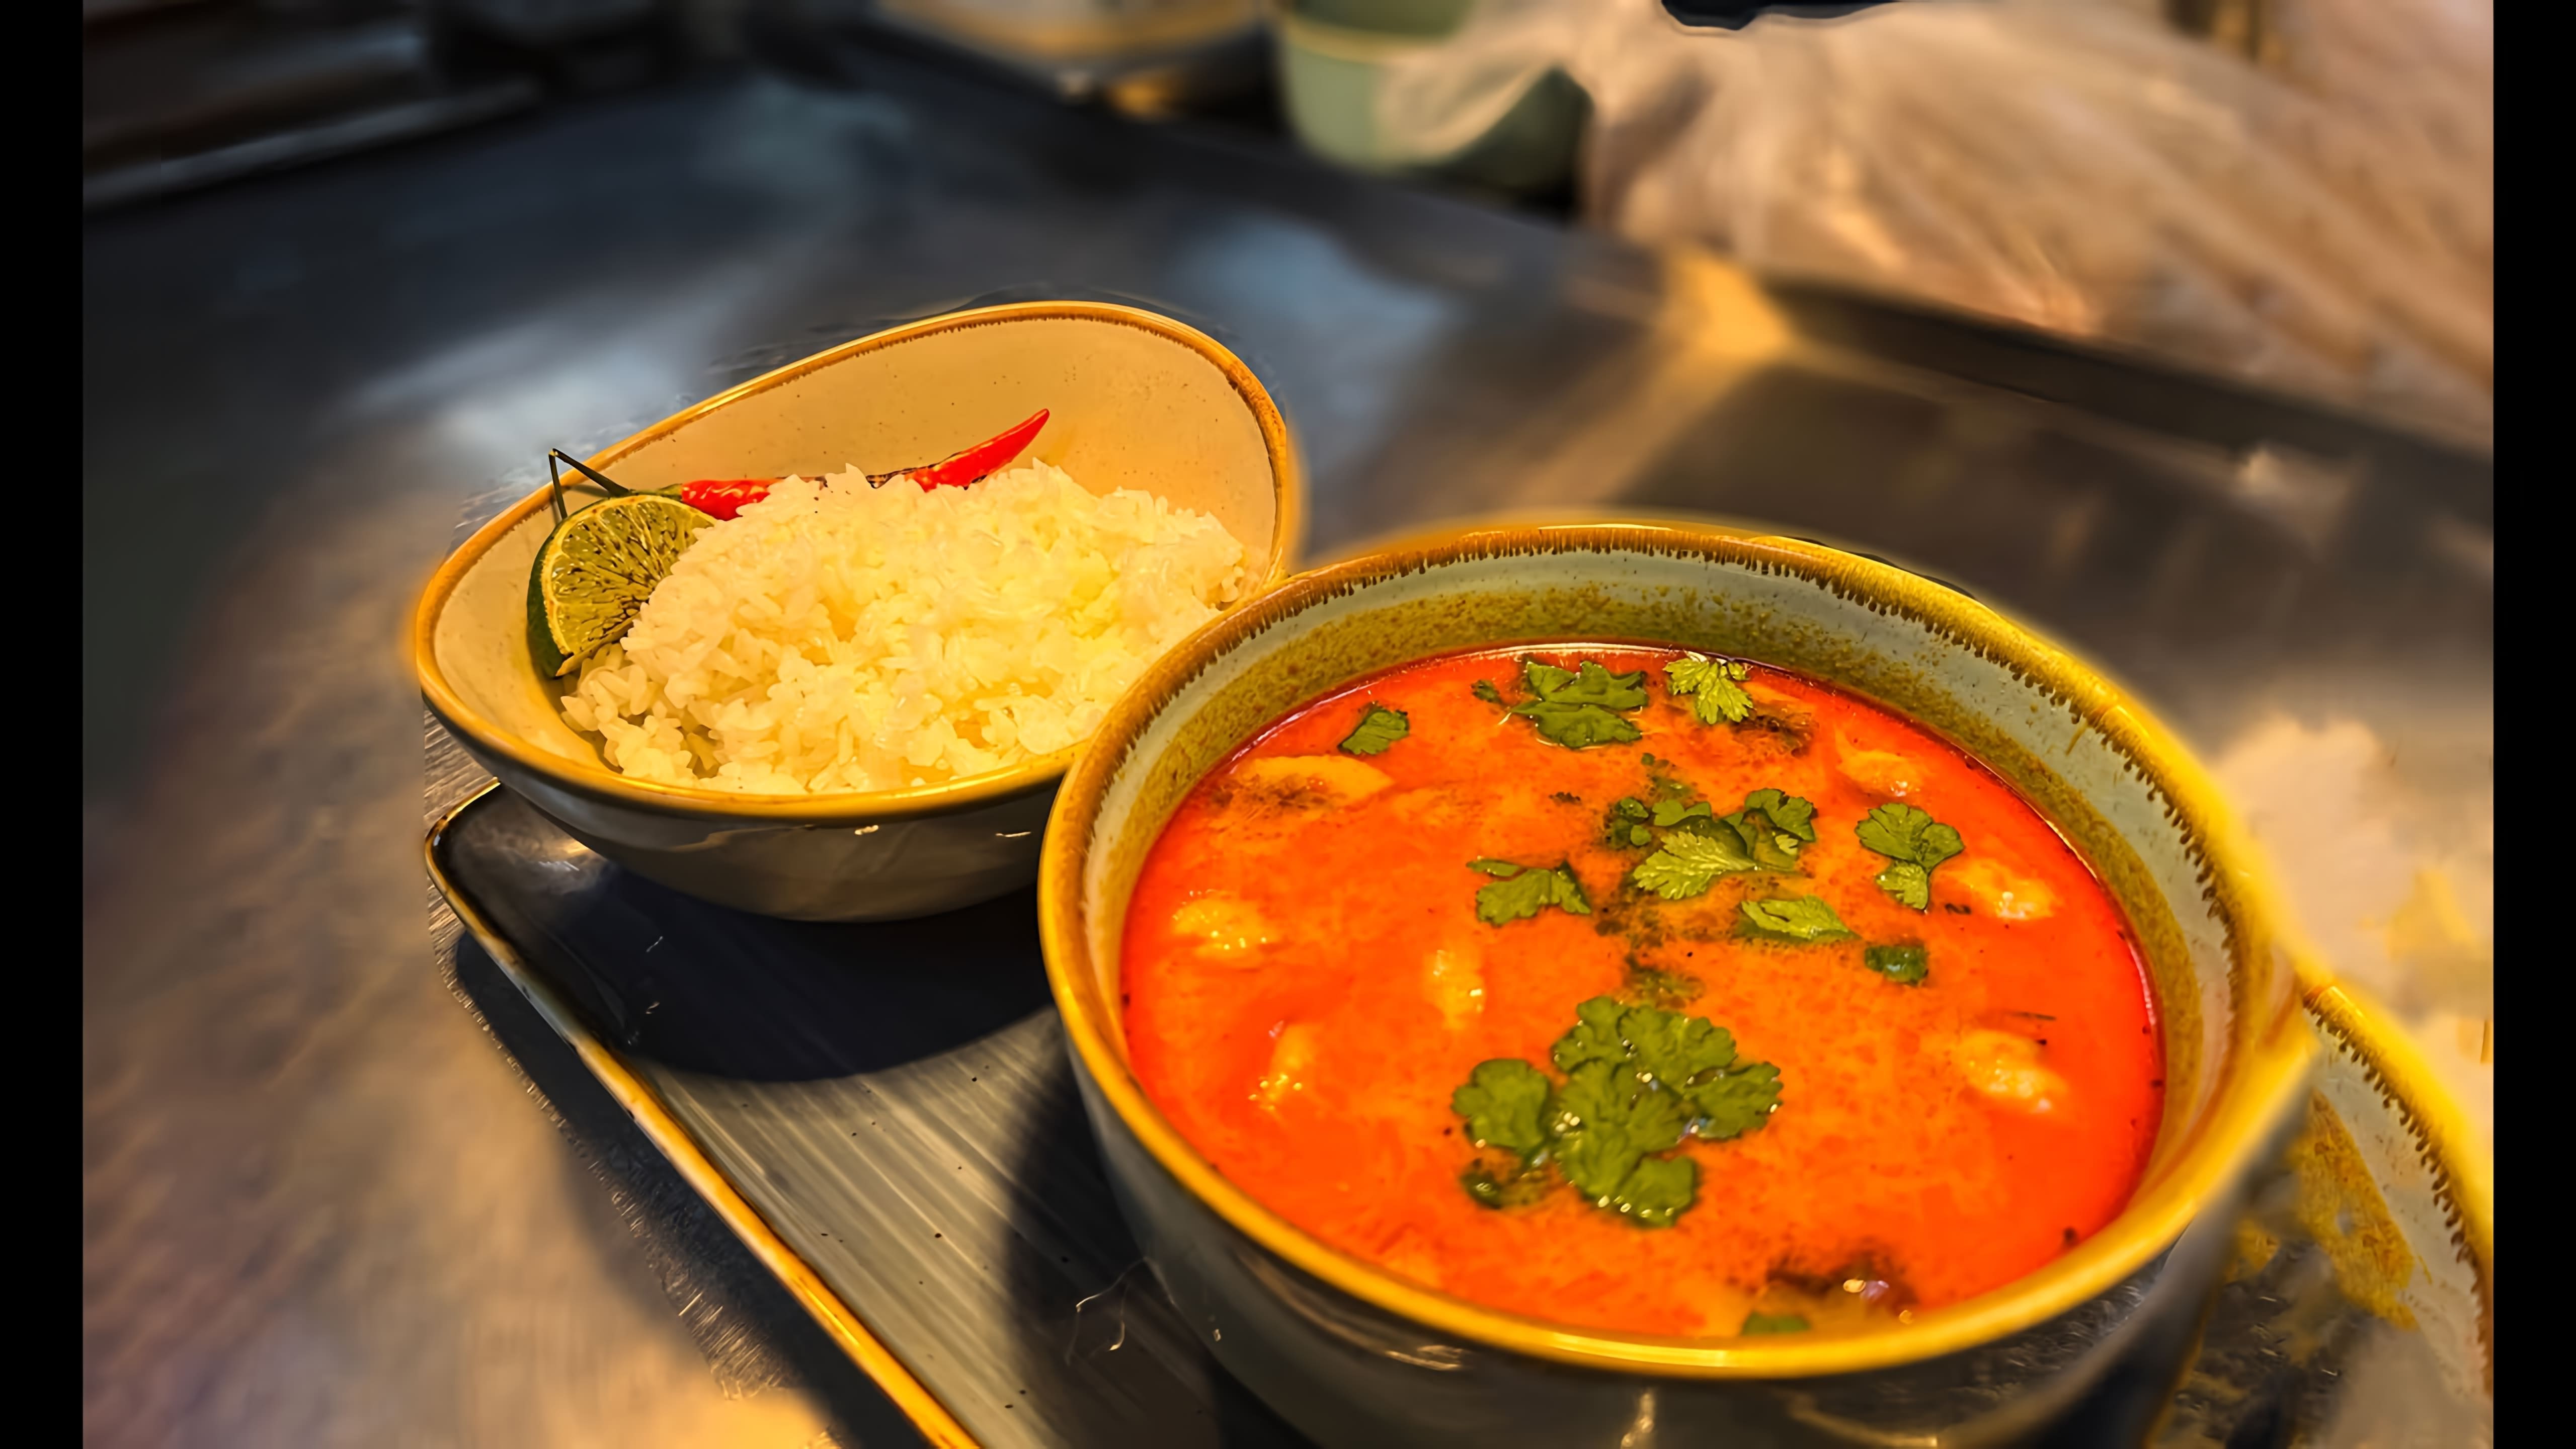 В этом видео шеф-повар Ален демонстрирует процесс приготовления популярного тайского супа Том Ям